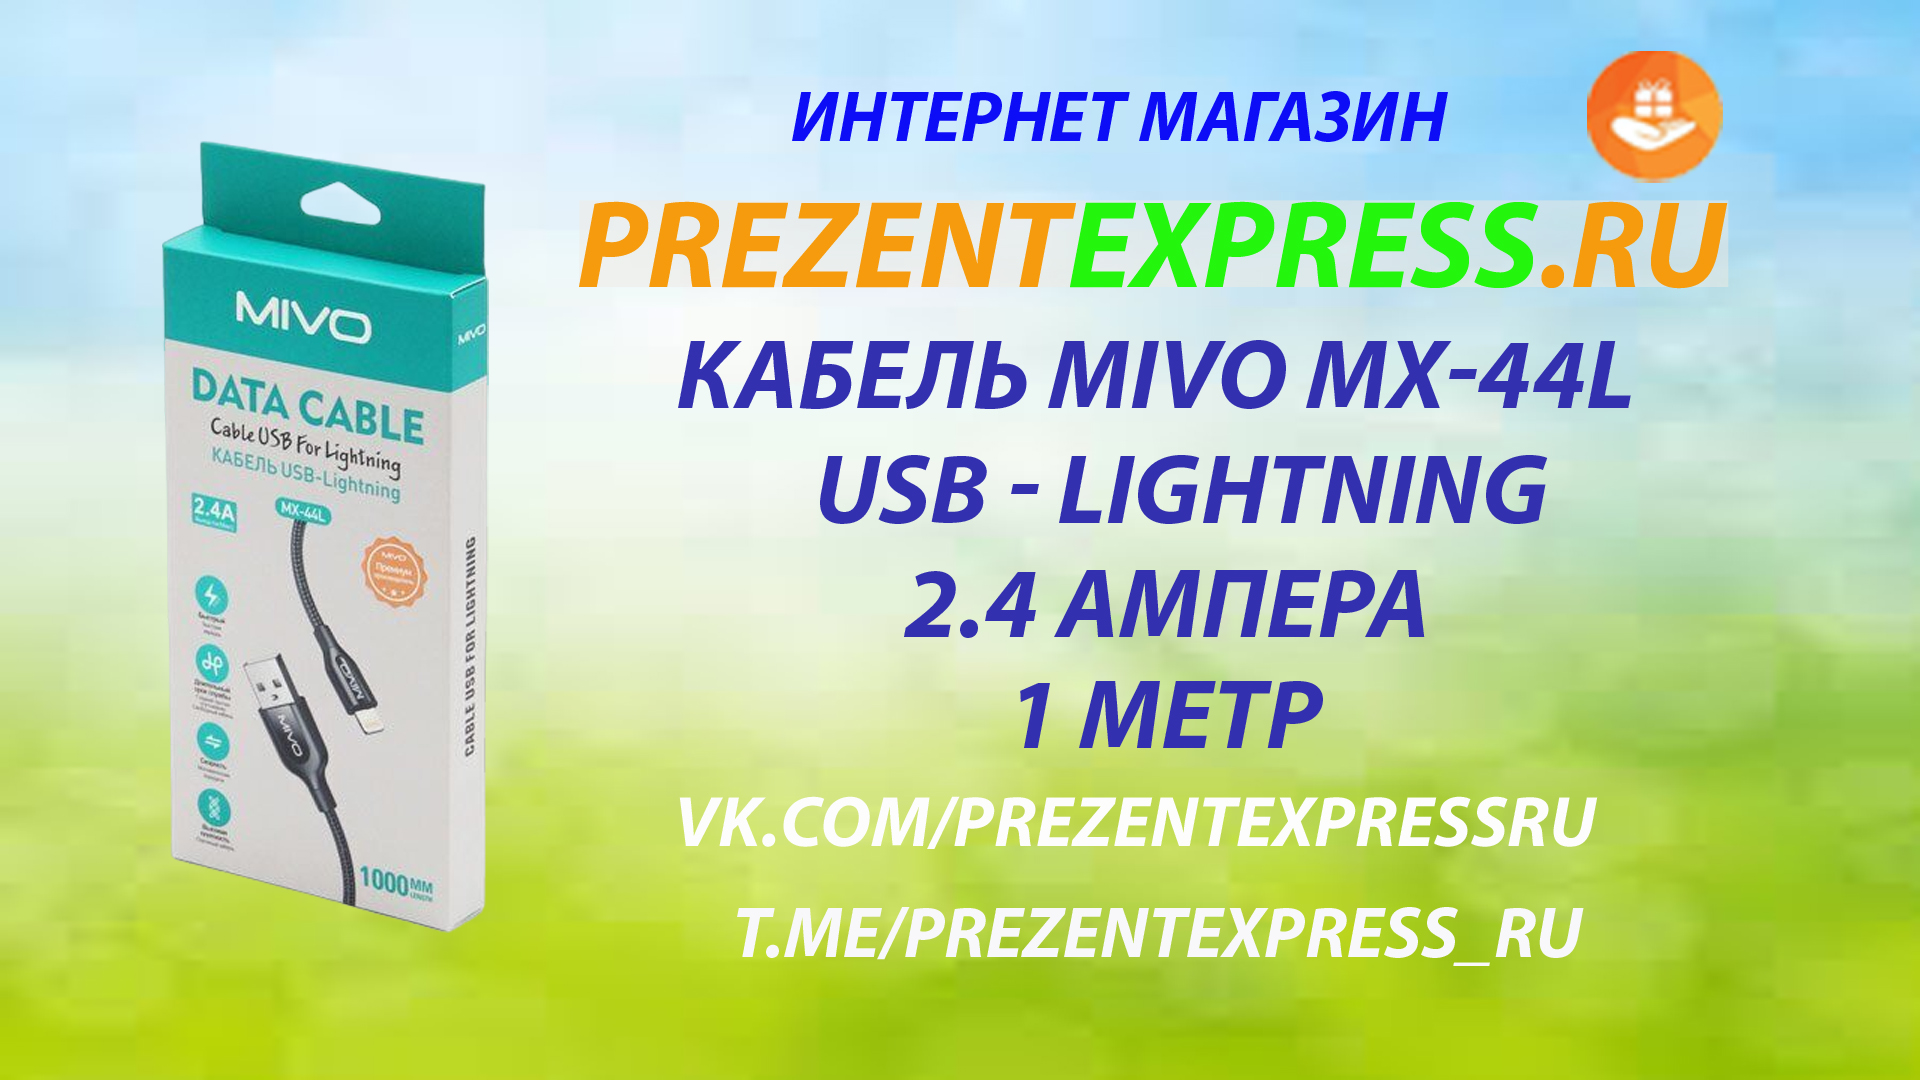 MIVO кабель MX-44L USB-Lightning